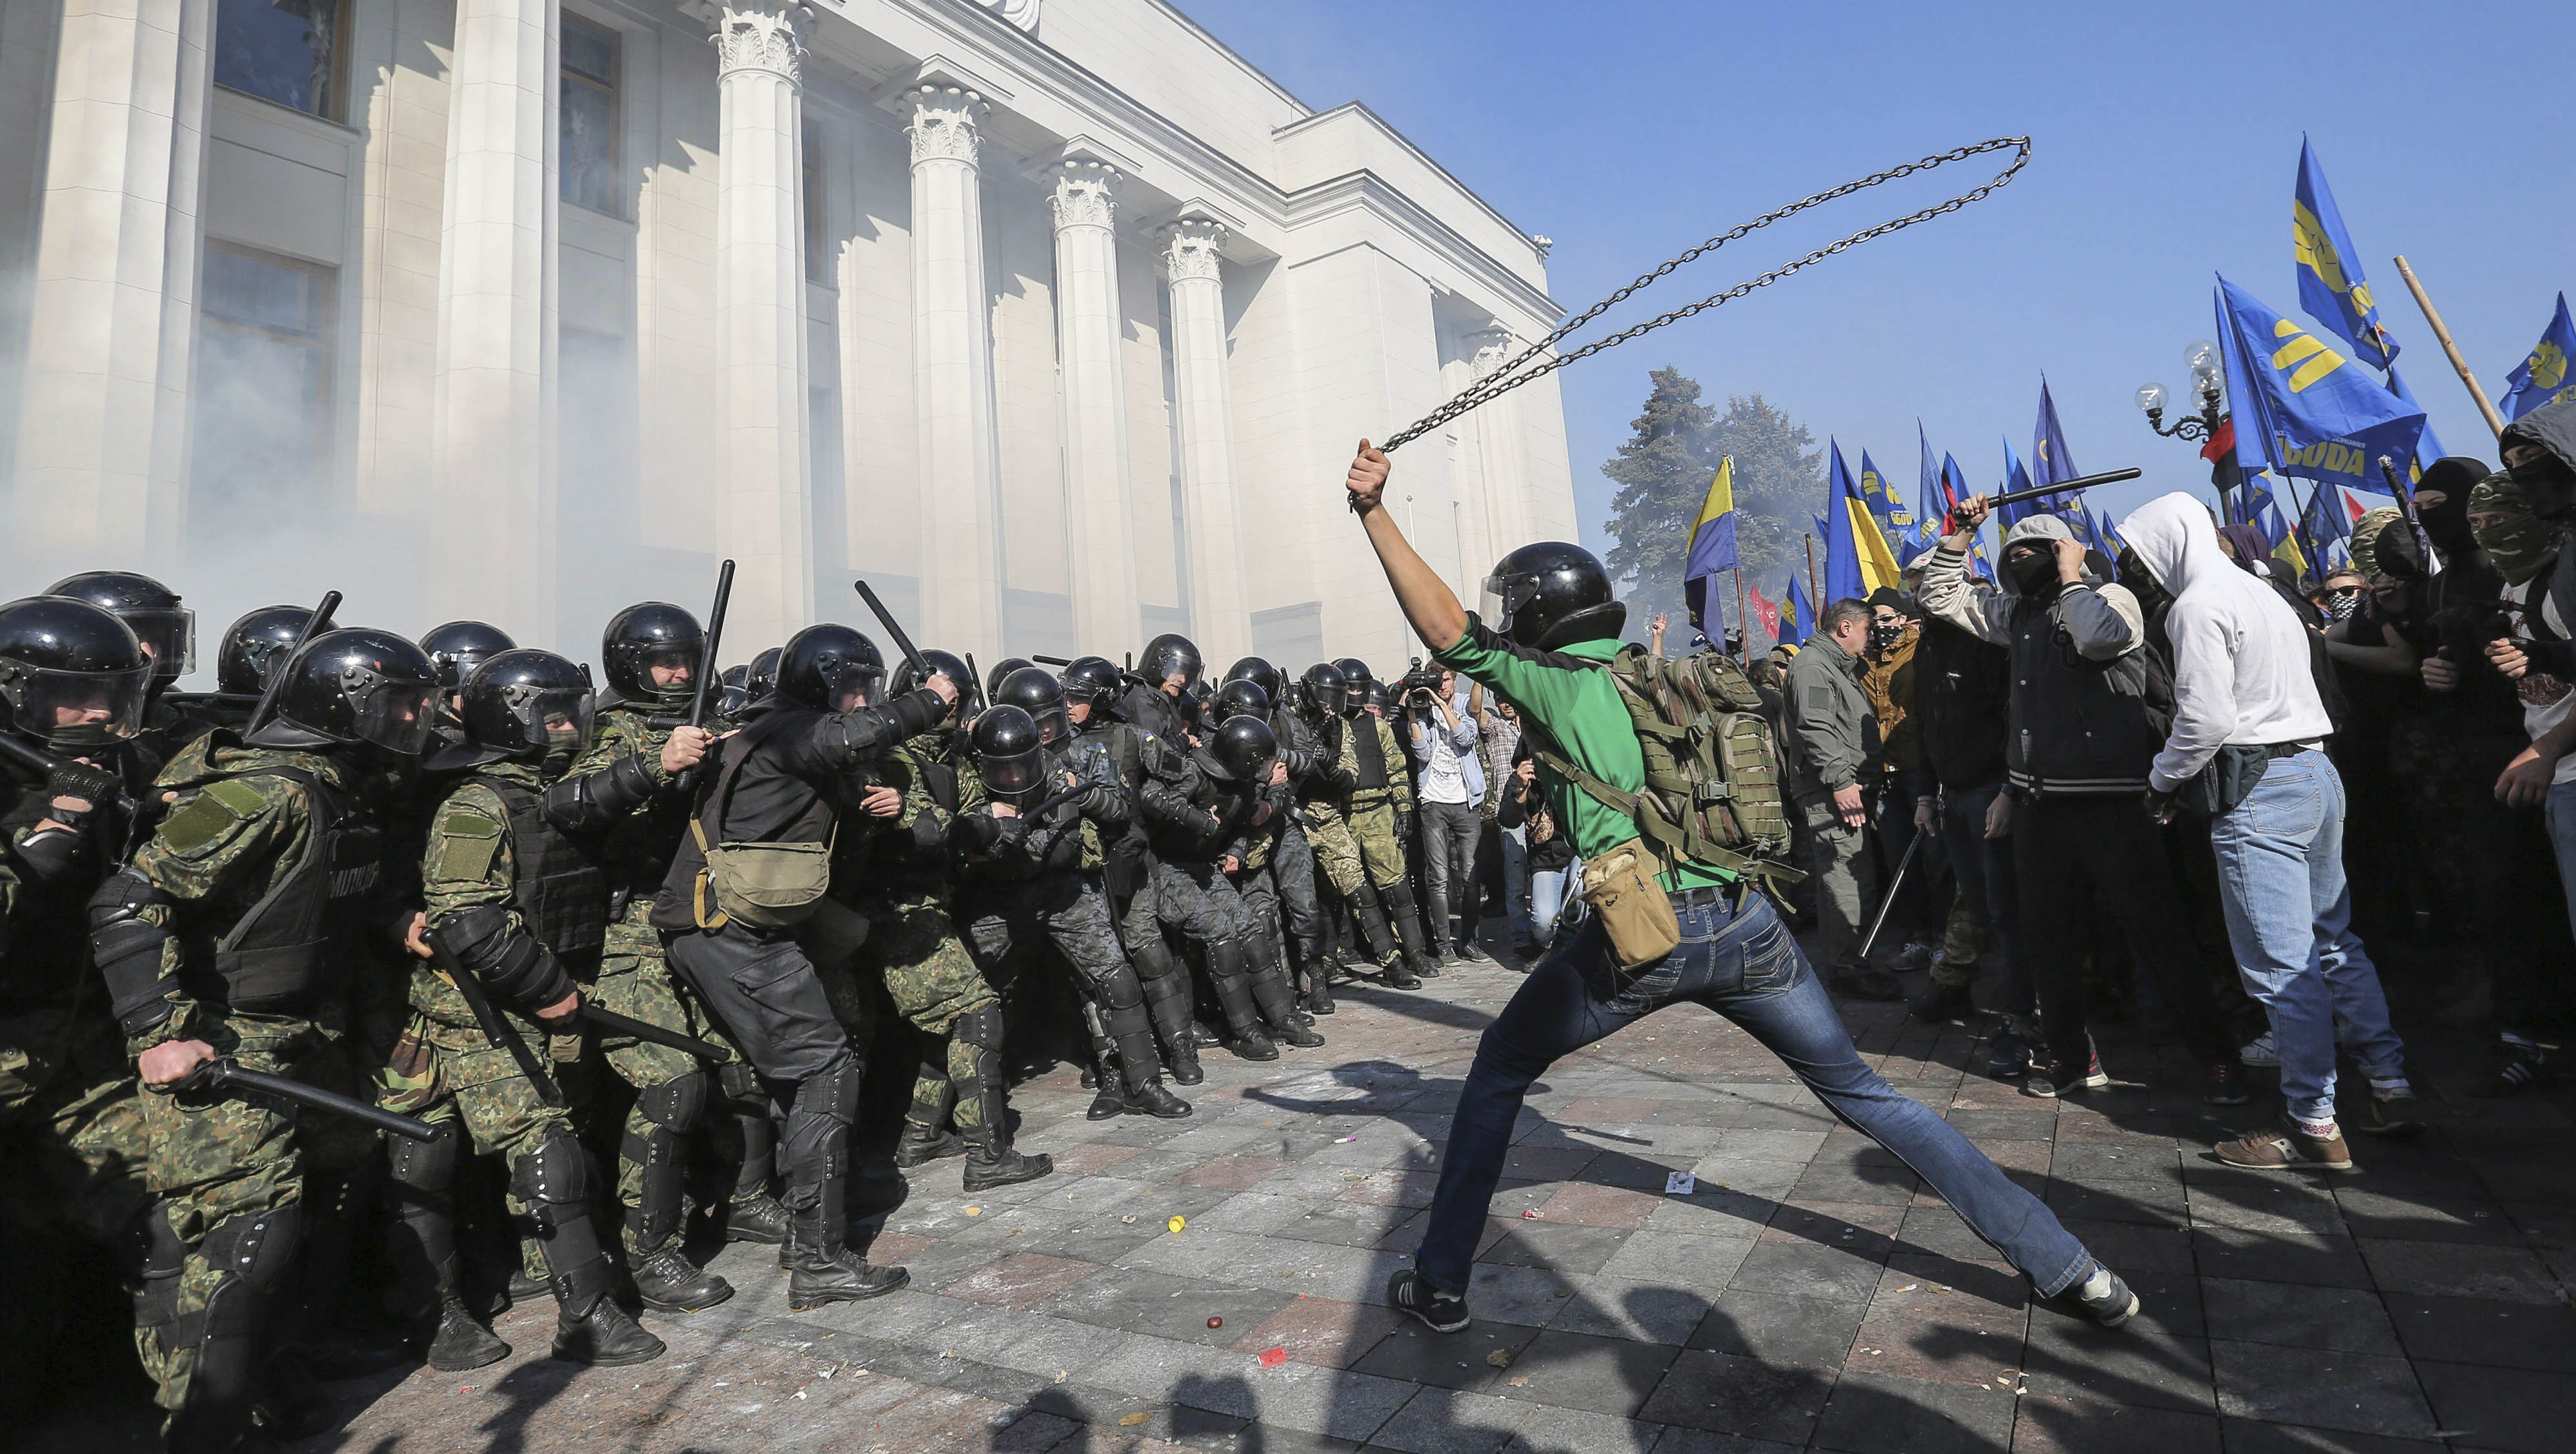 Los manifestantes se enfrentaron a los miles de agentes que custodiaban el edificio en dos cordones policiales. (Foto: EFE)